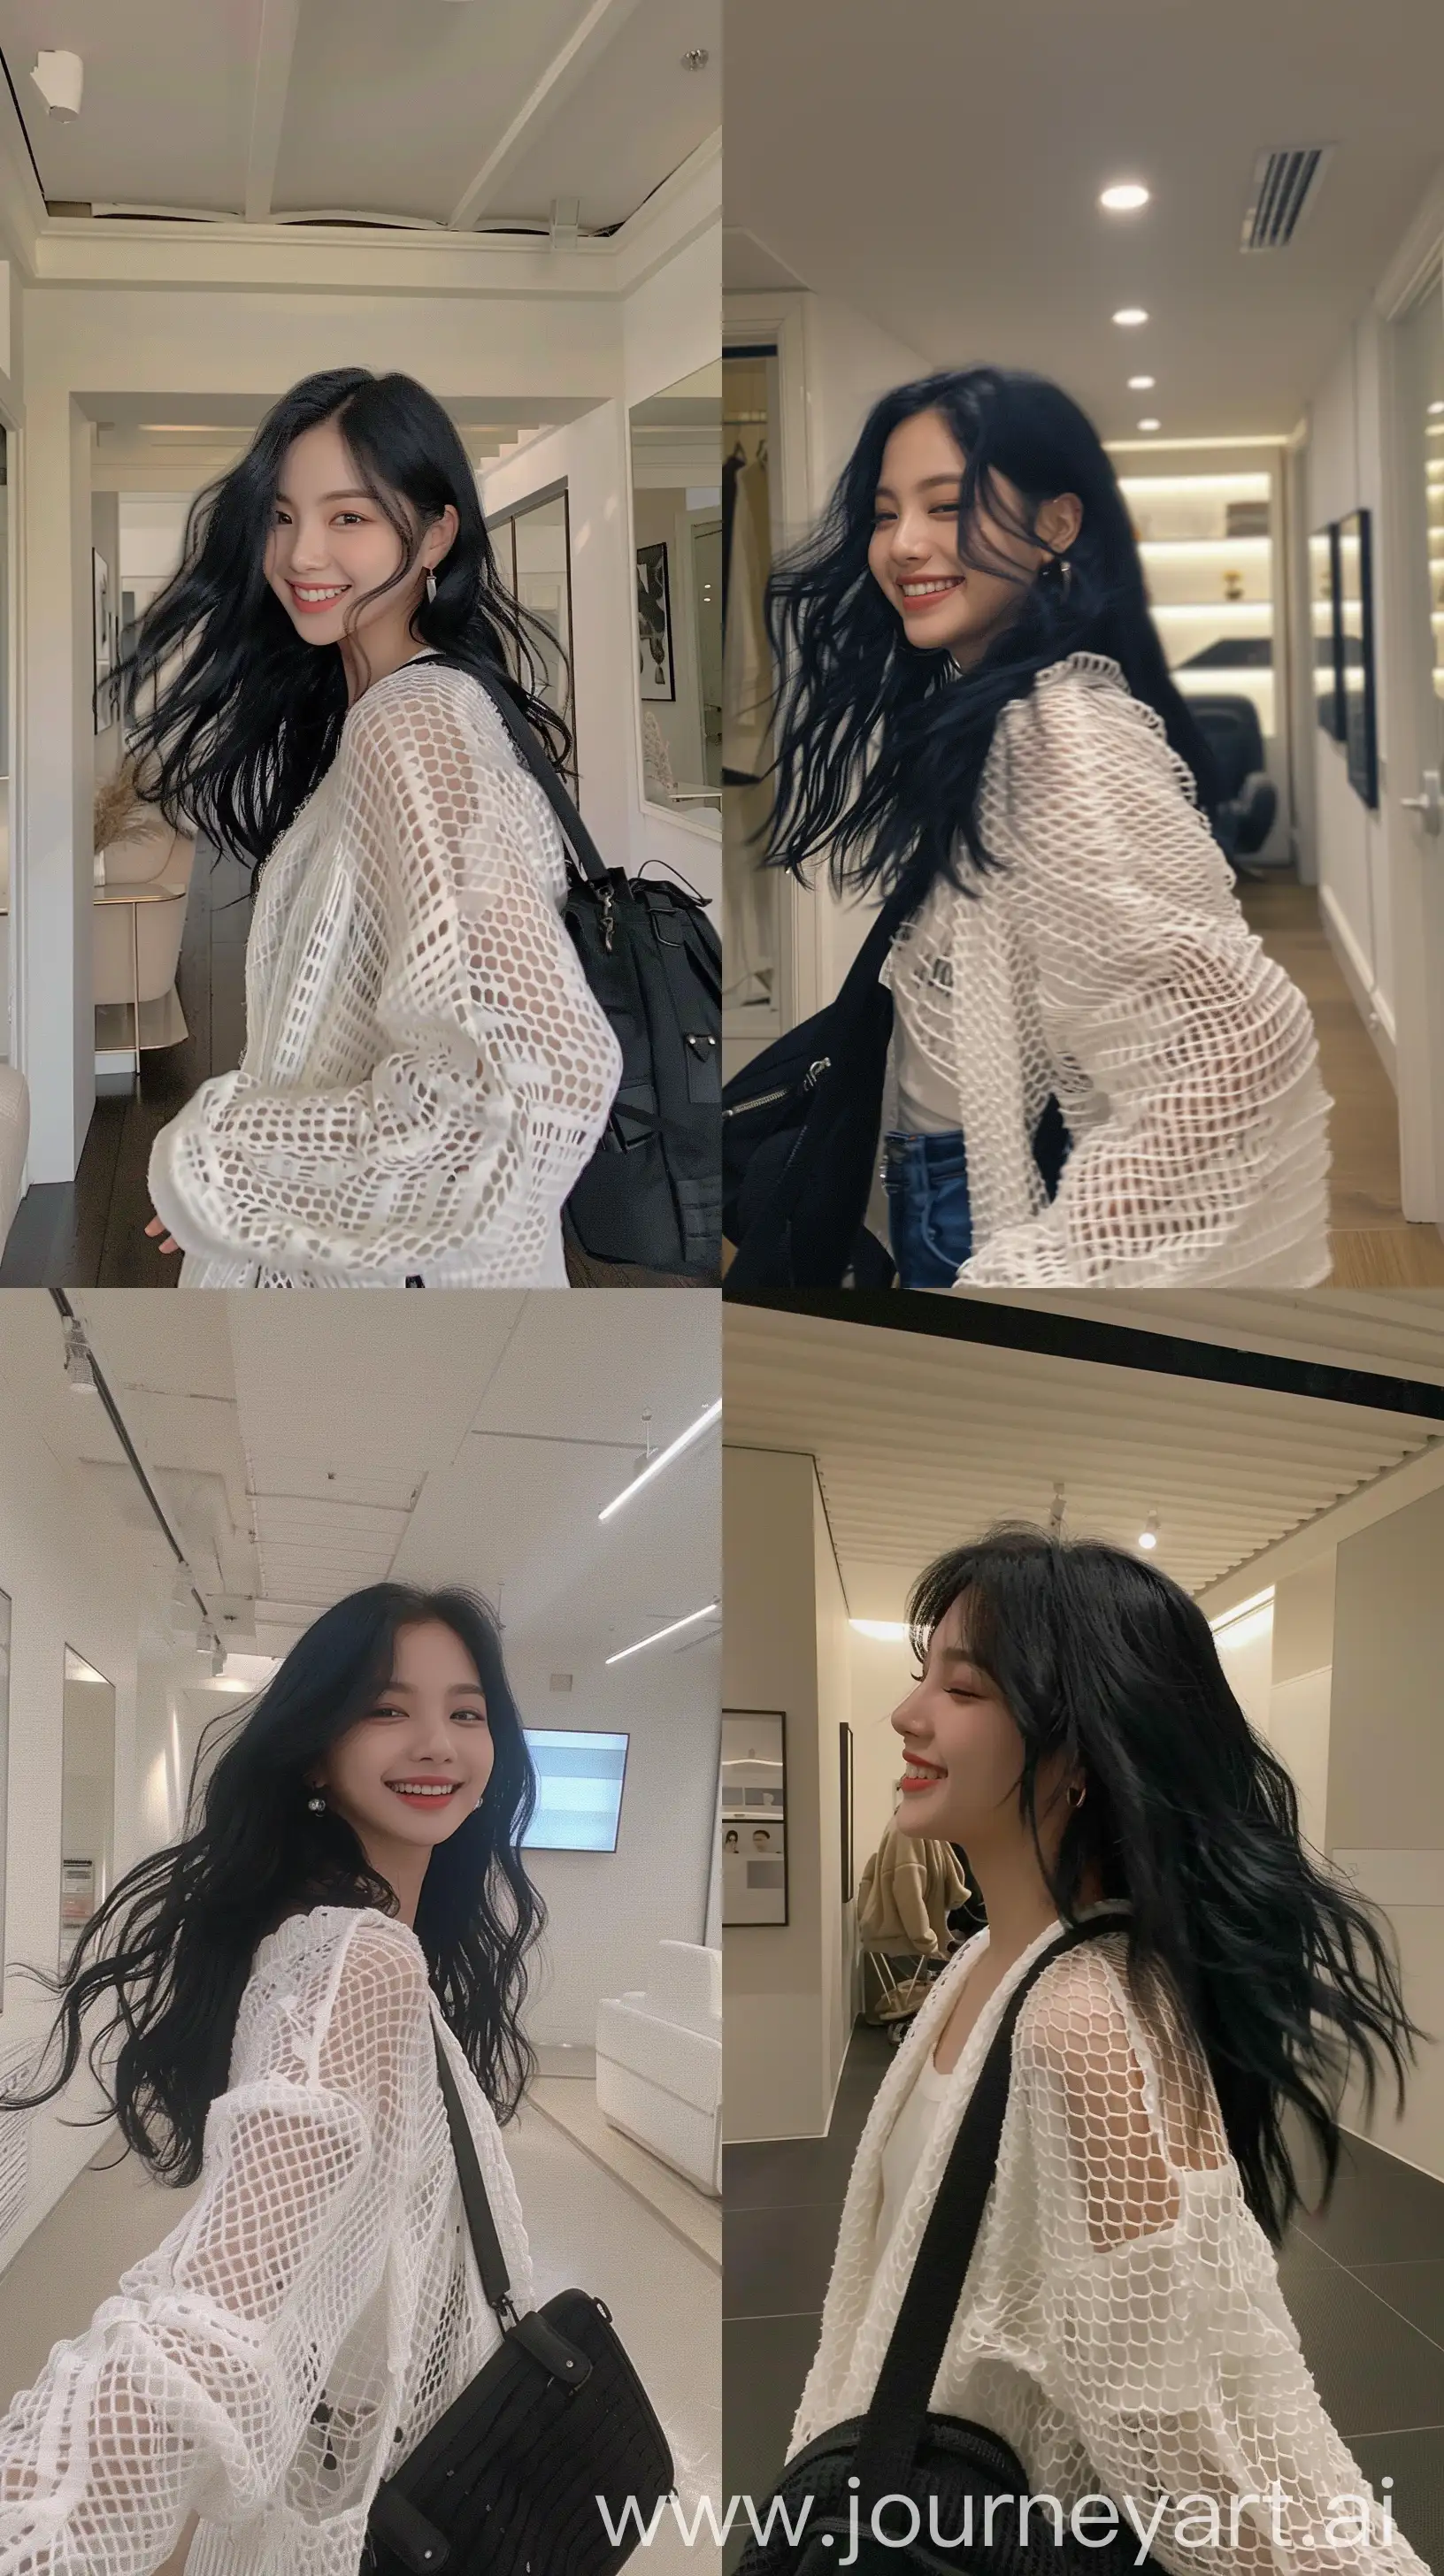 Blackpinks-Jennie-Smiling-Selfie-in-White-Net-Cardigan-and-Black-Shoulder-Bag